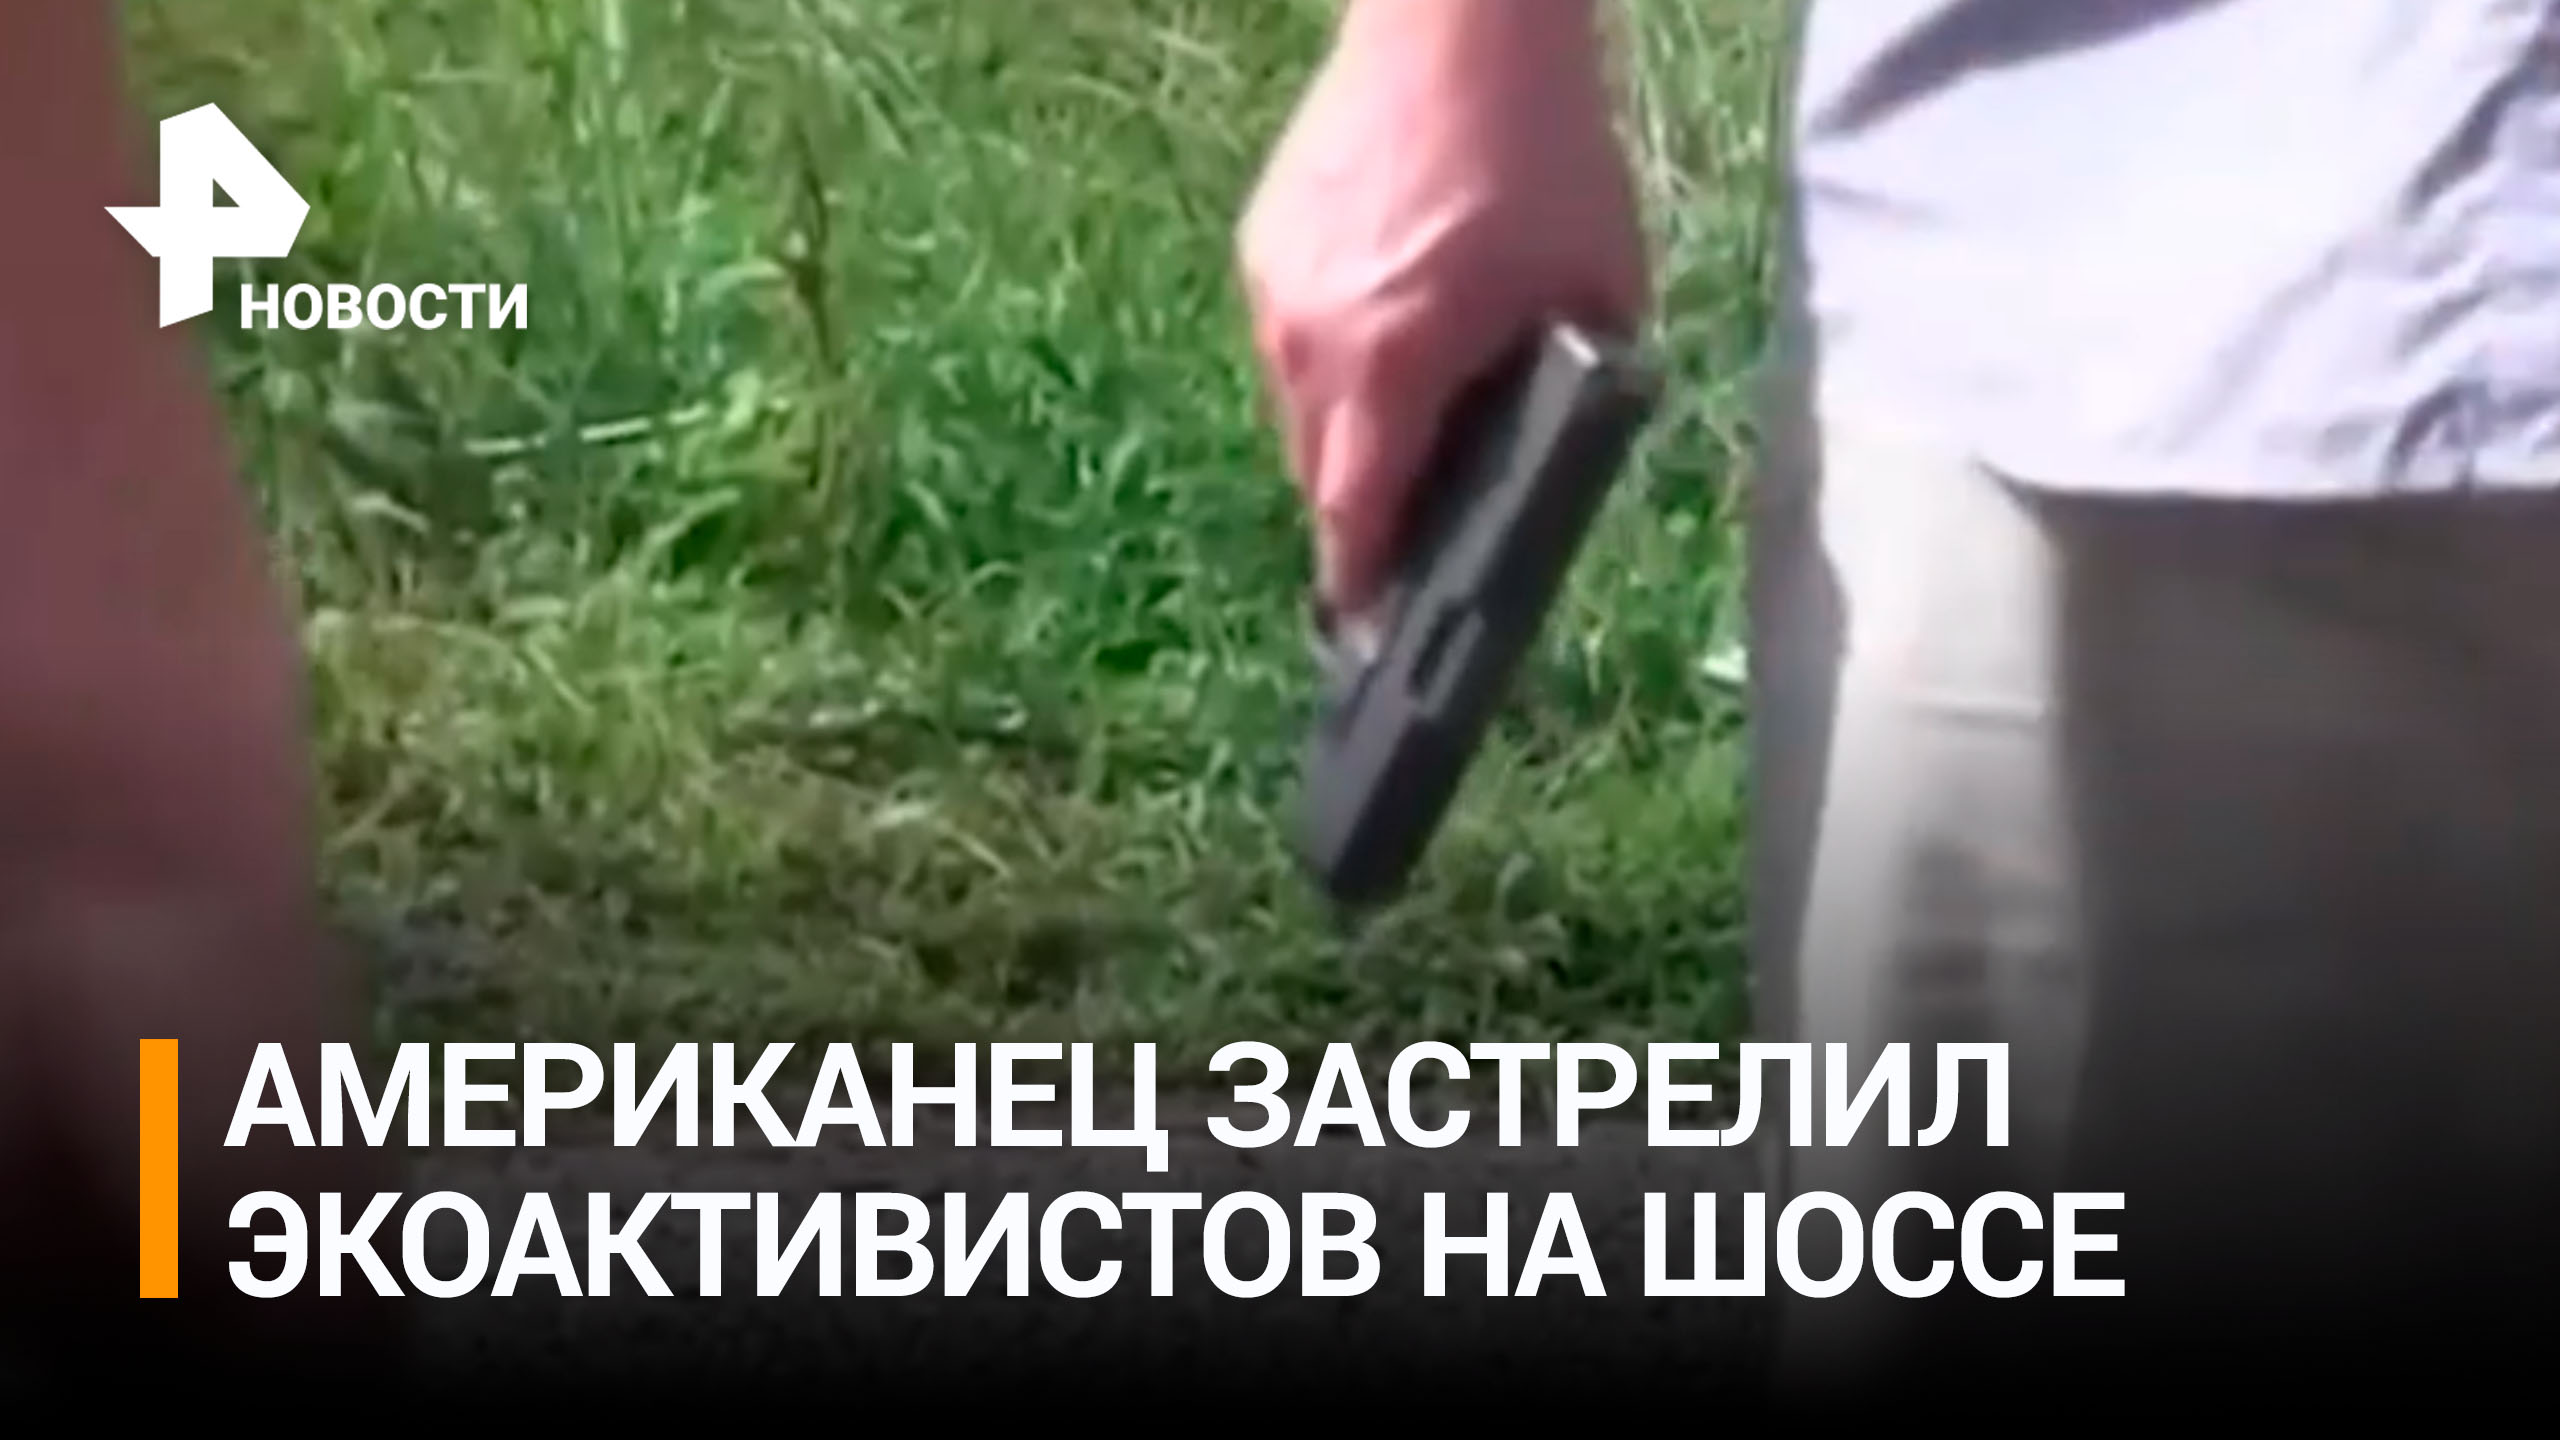 Американец застрелил двух экоактивистов, перекрывших шоссе для протеста / РЕН Новости